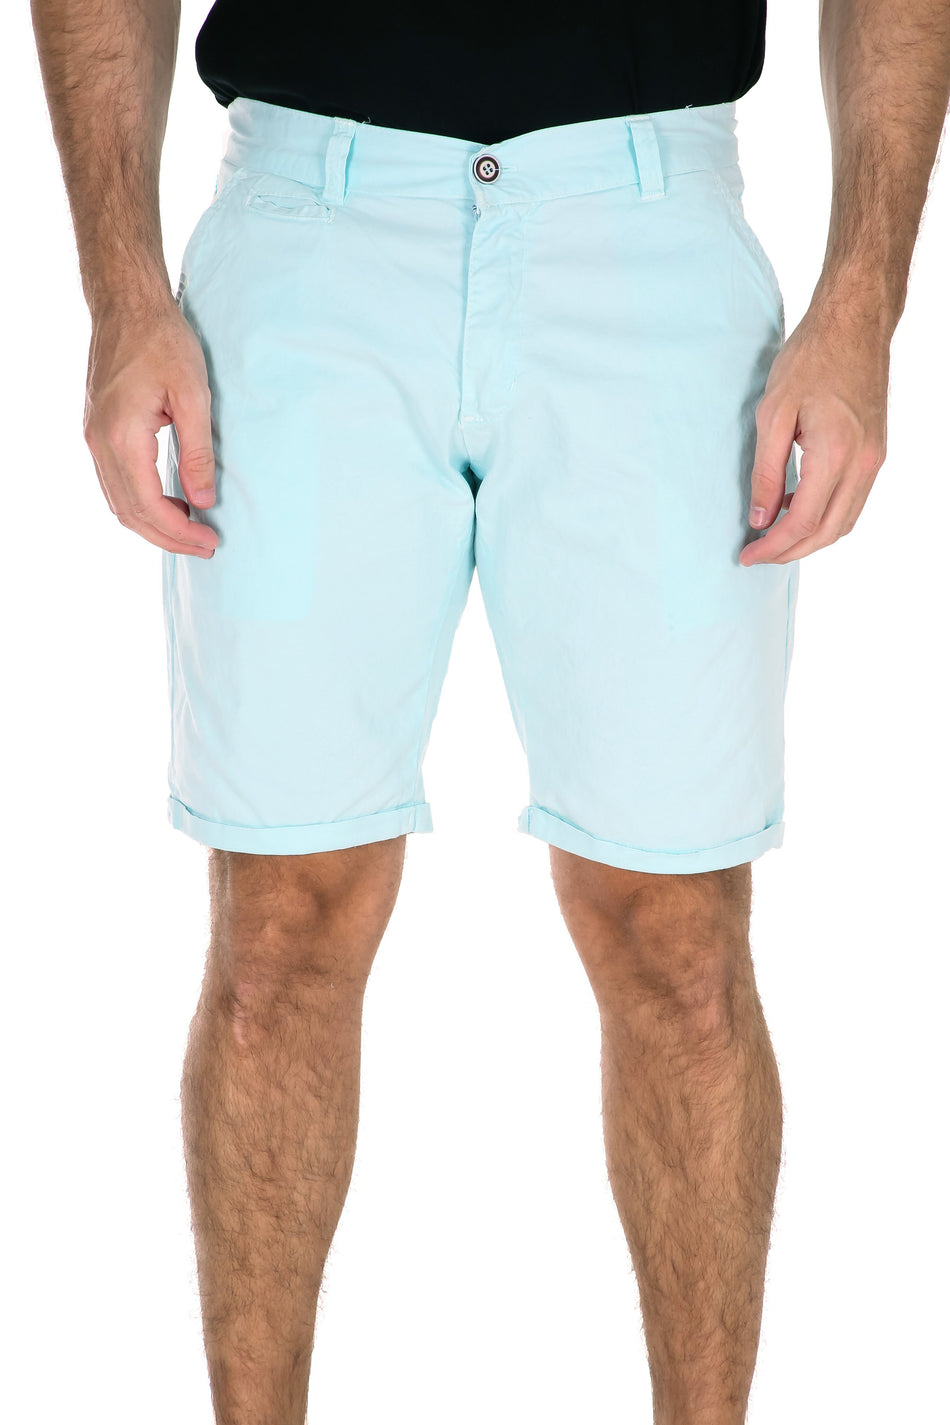 183110 - Turquoise Fashion Shorts